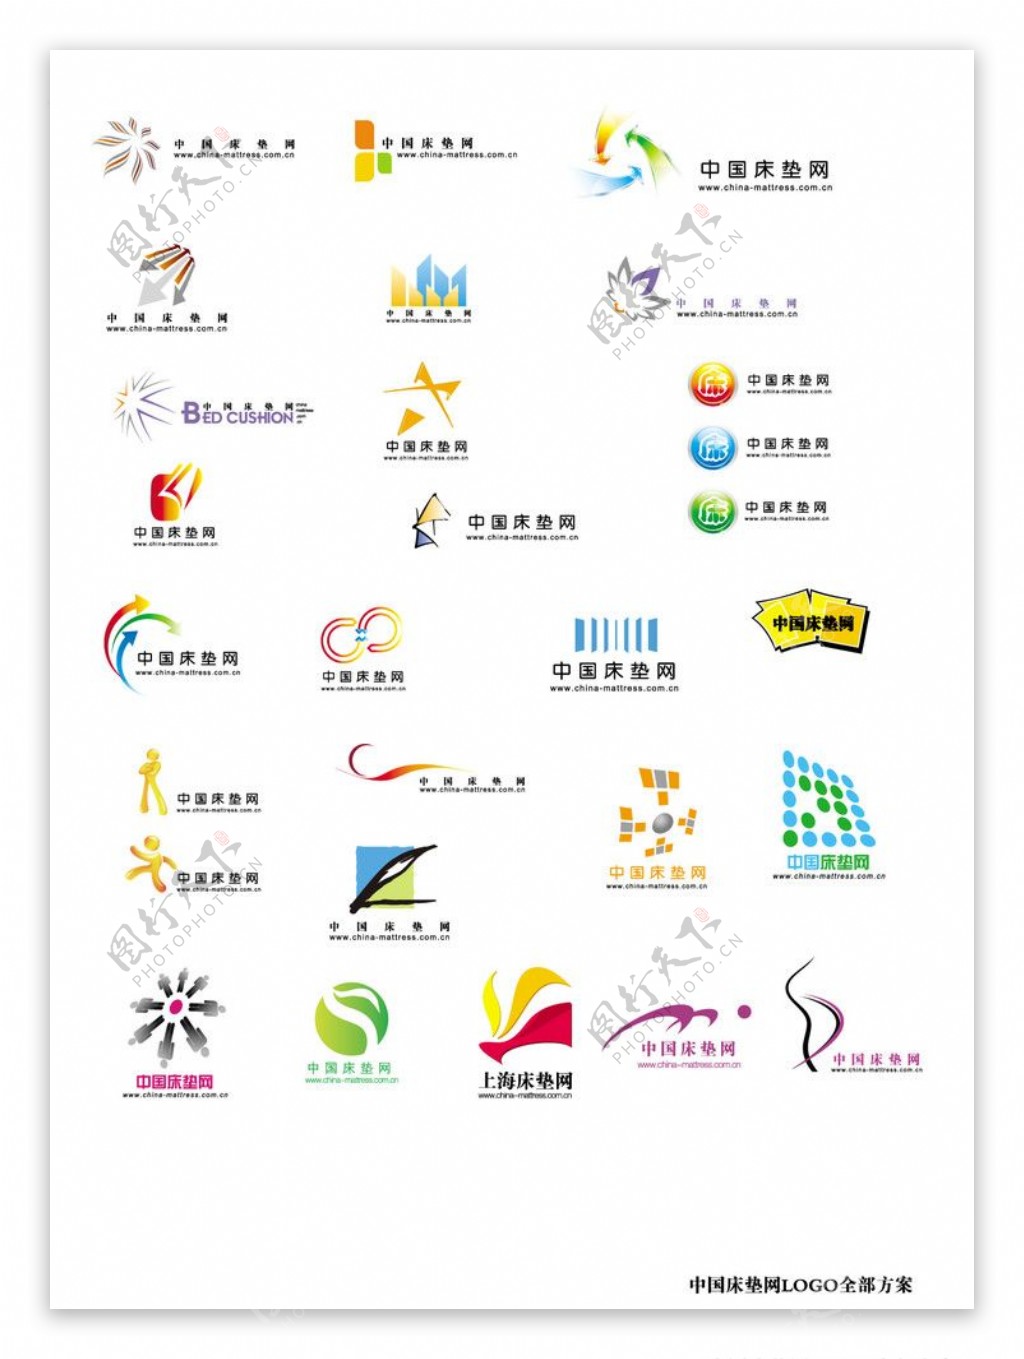 中国床垫网LOGO方案合集图片